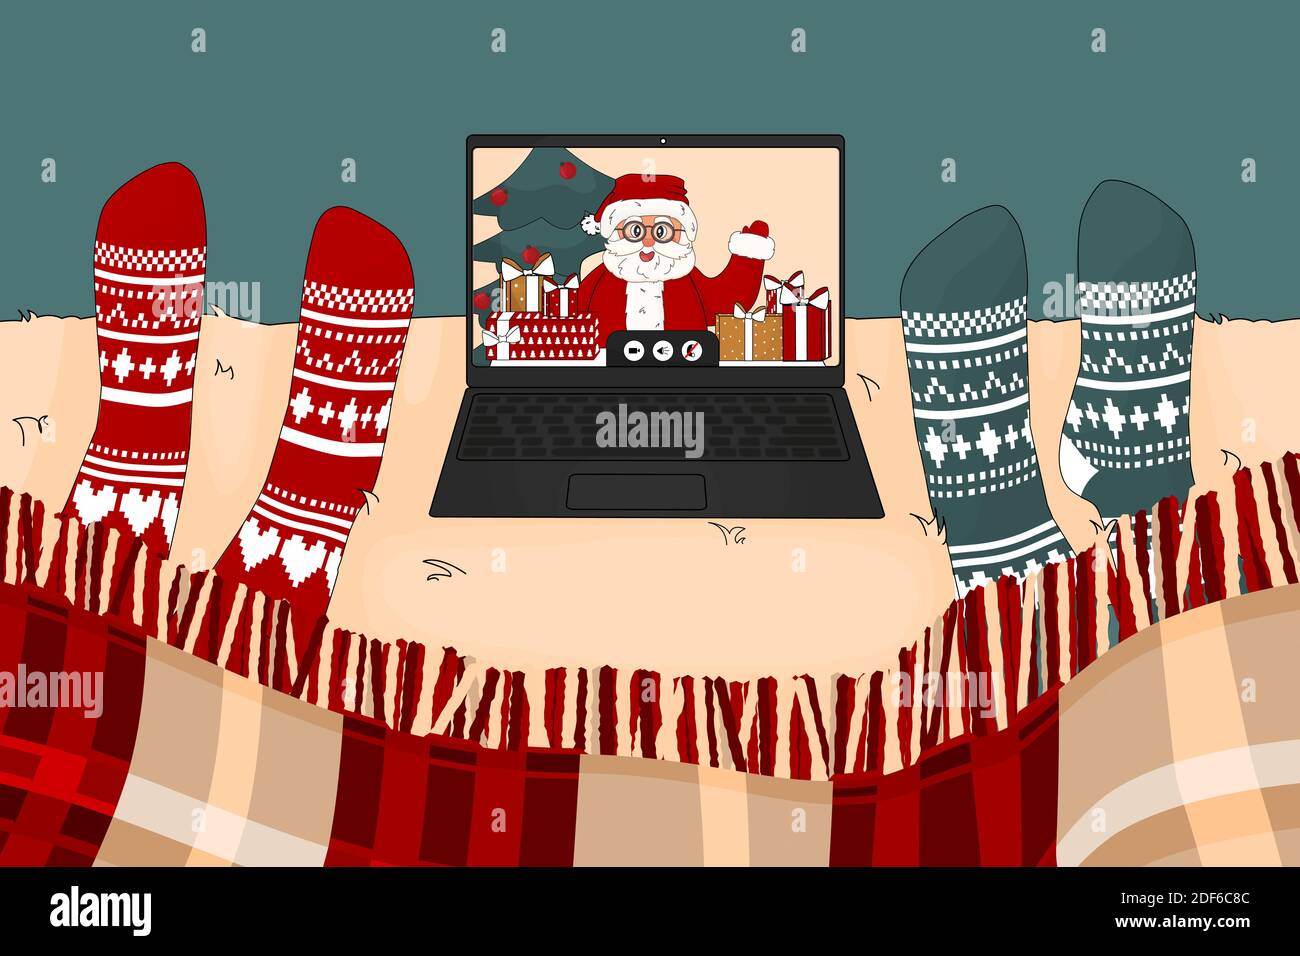 Videochiamata con Babbo Natale e regali nel periodo natalizio. Due persone stanno guardando lo schermo del computer portatile sul letto in calzini lavorato a maglia rosso e verde Illustrazione Vettoriale